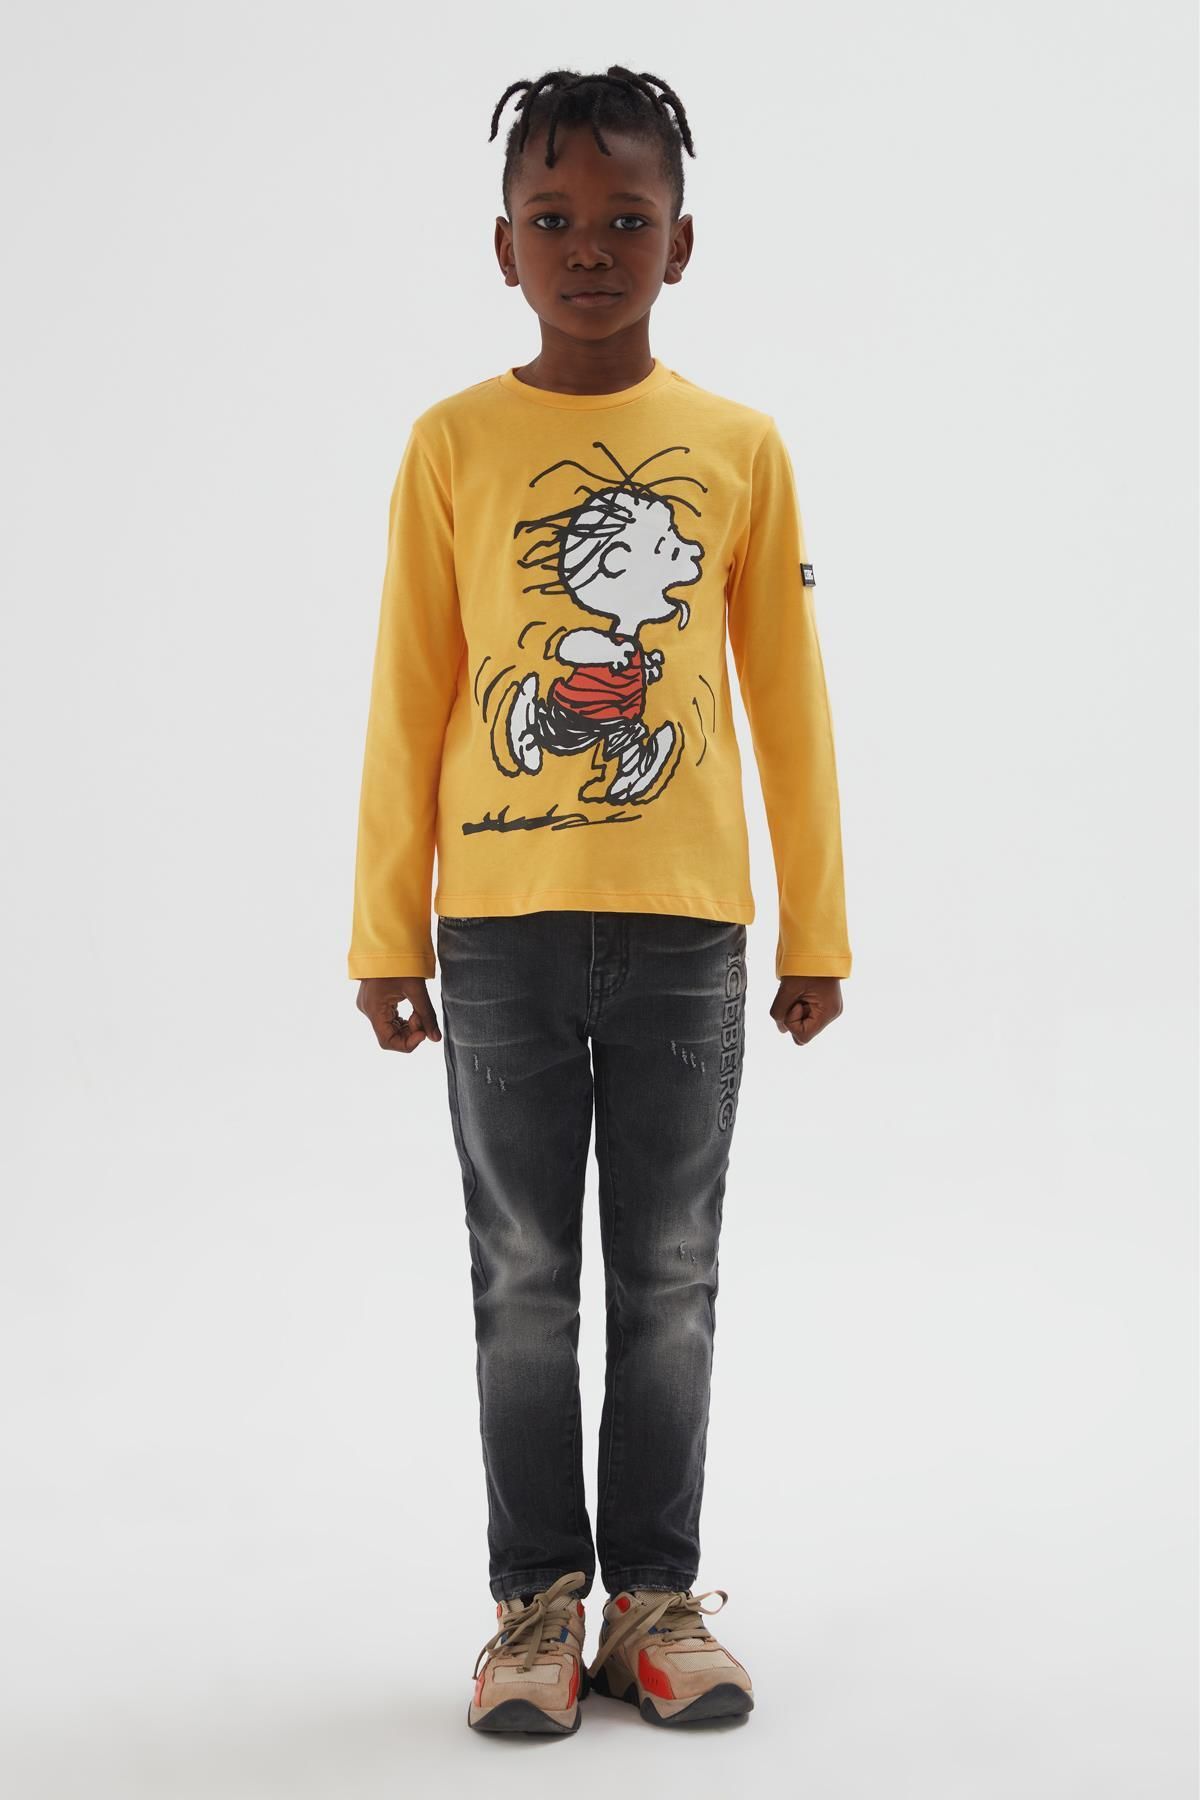 Iceberg Bg Store Erkek Çocuk Sarı T-shirt 22fwıts3306